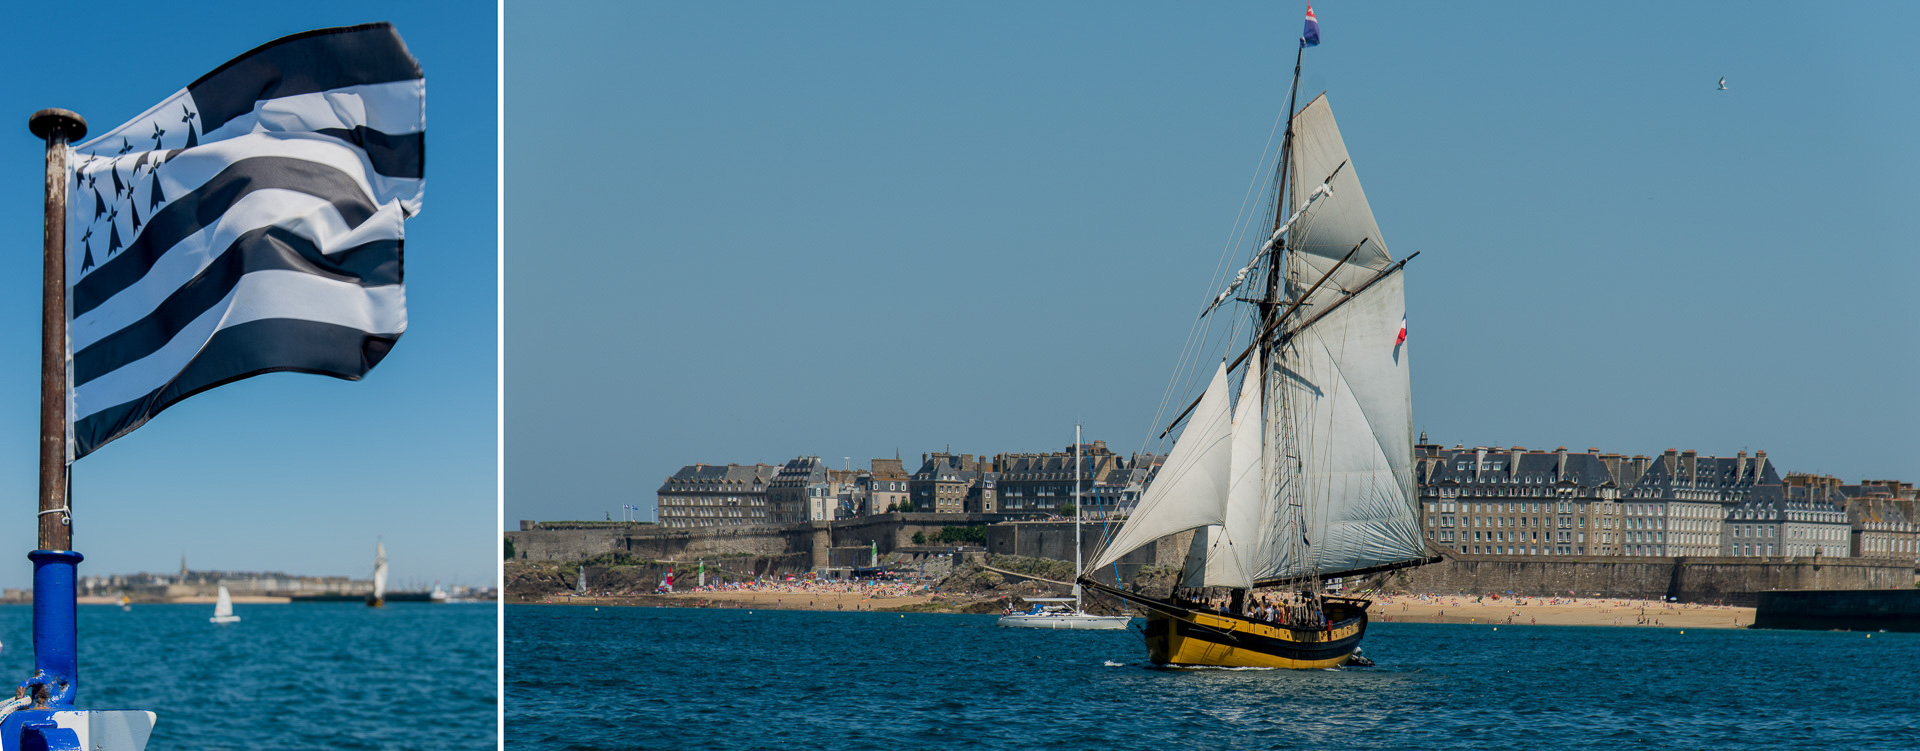 Saint-Malo. Le " Renard" (réplique du bateau de Surcouf).